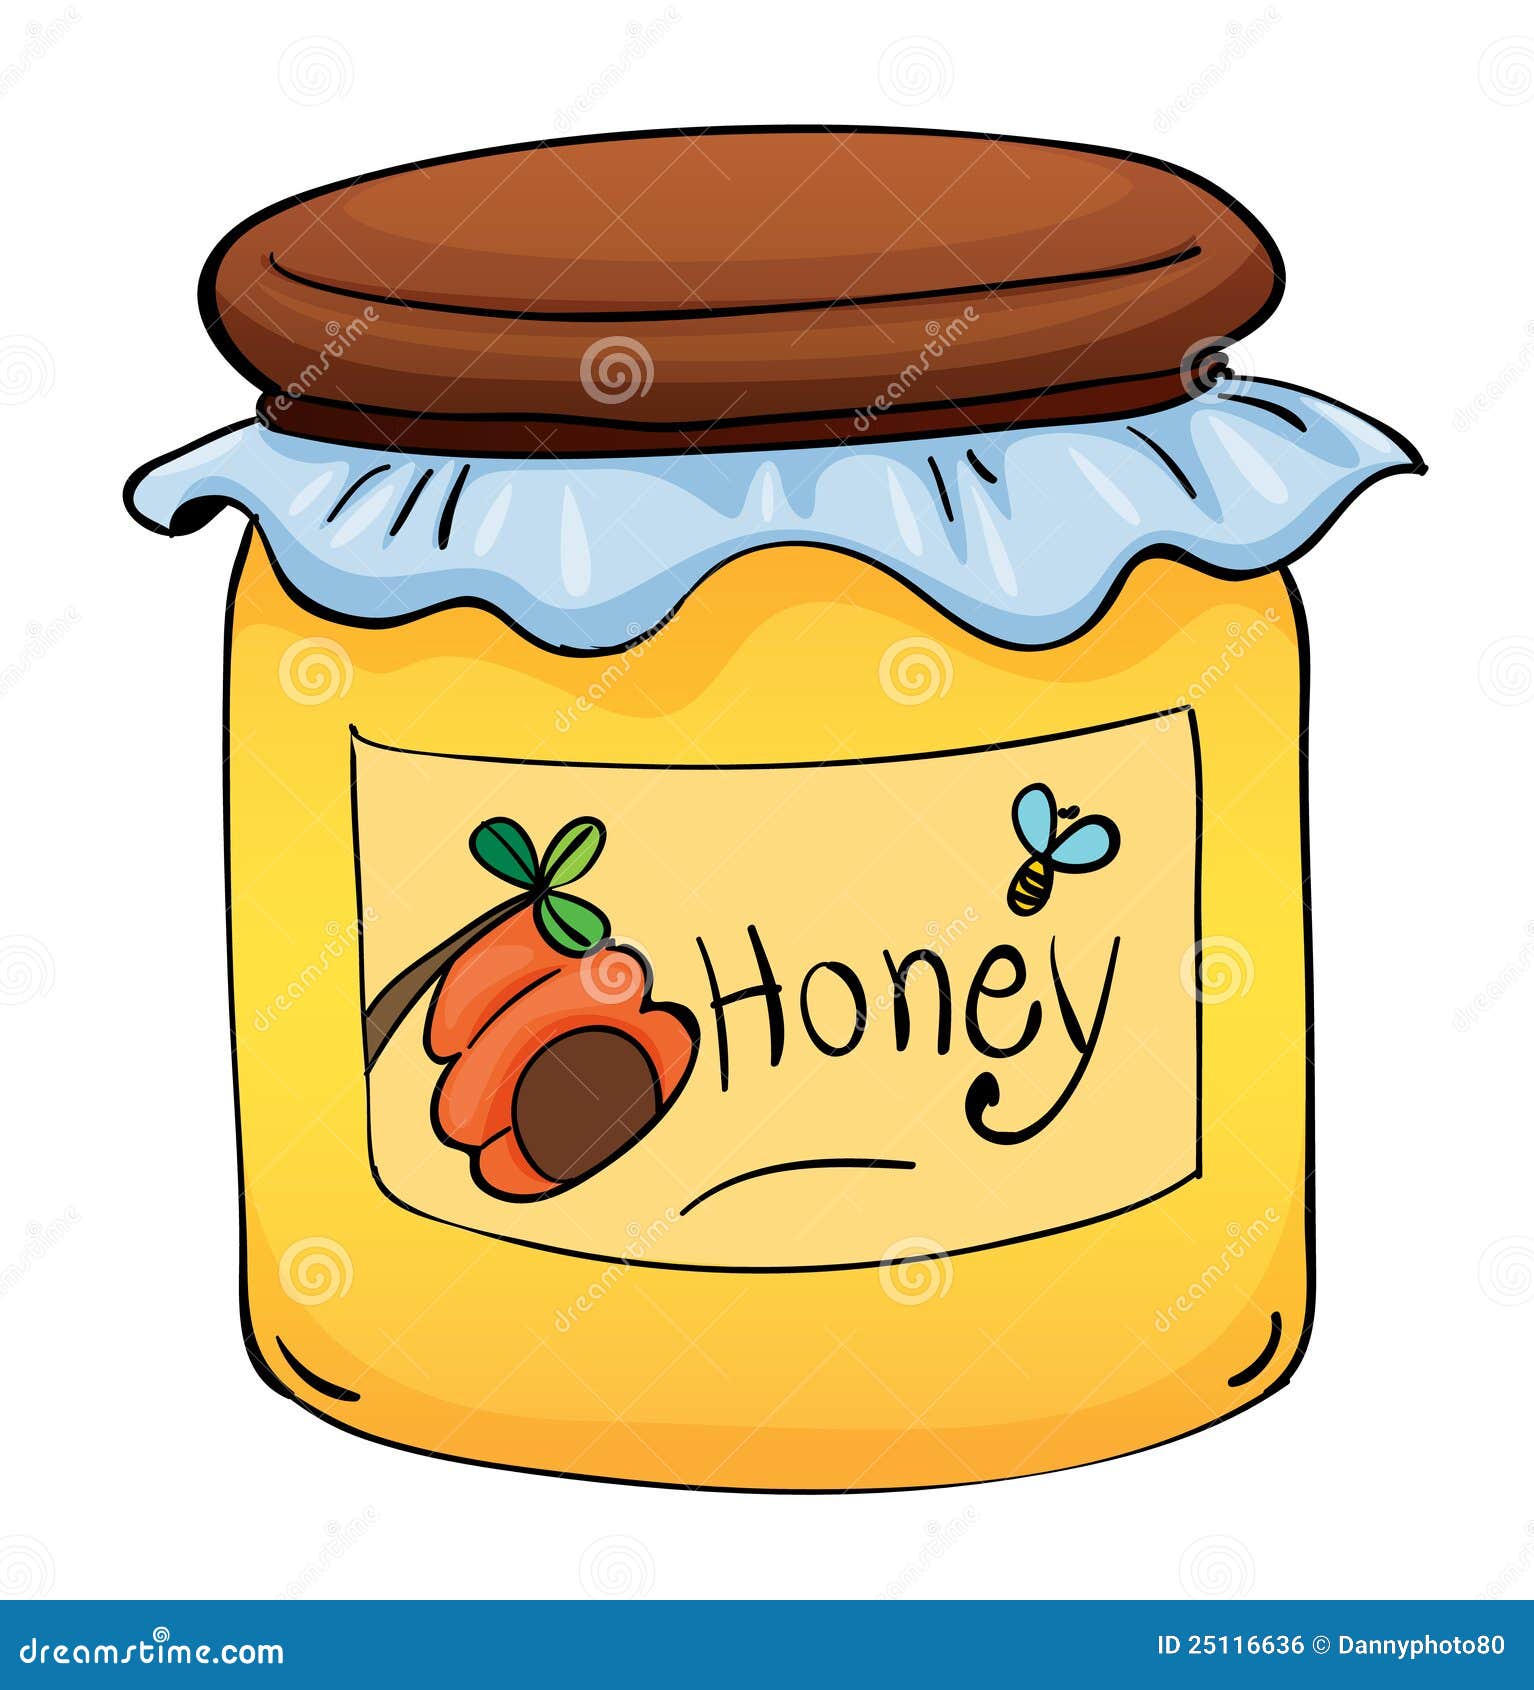 honey images clip art - photo #13